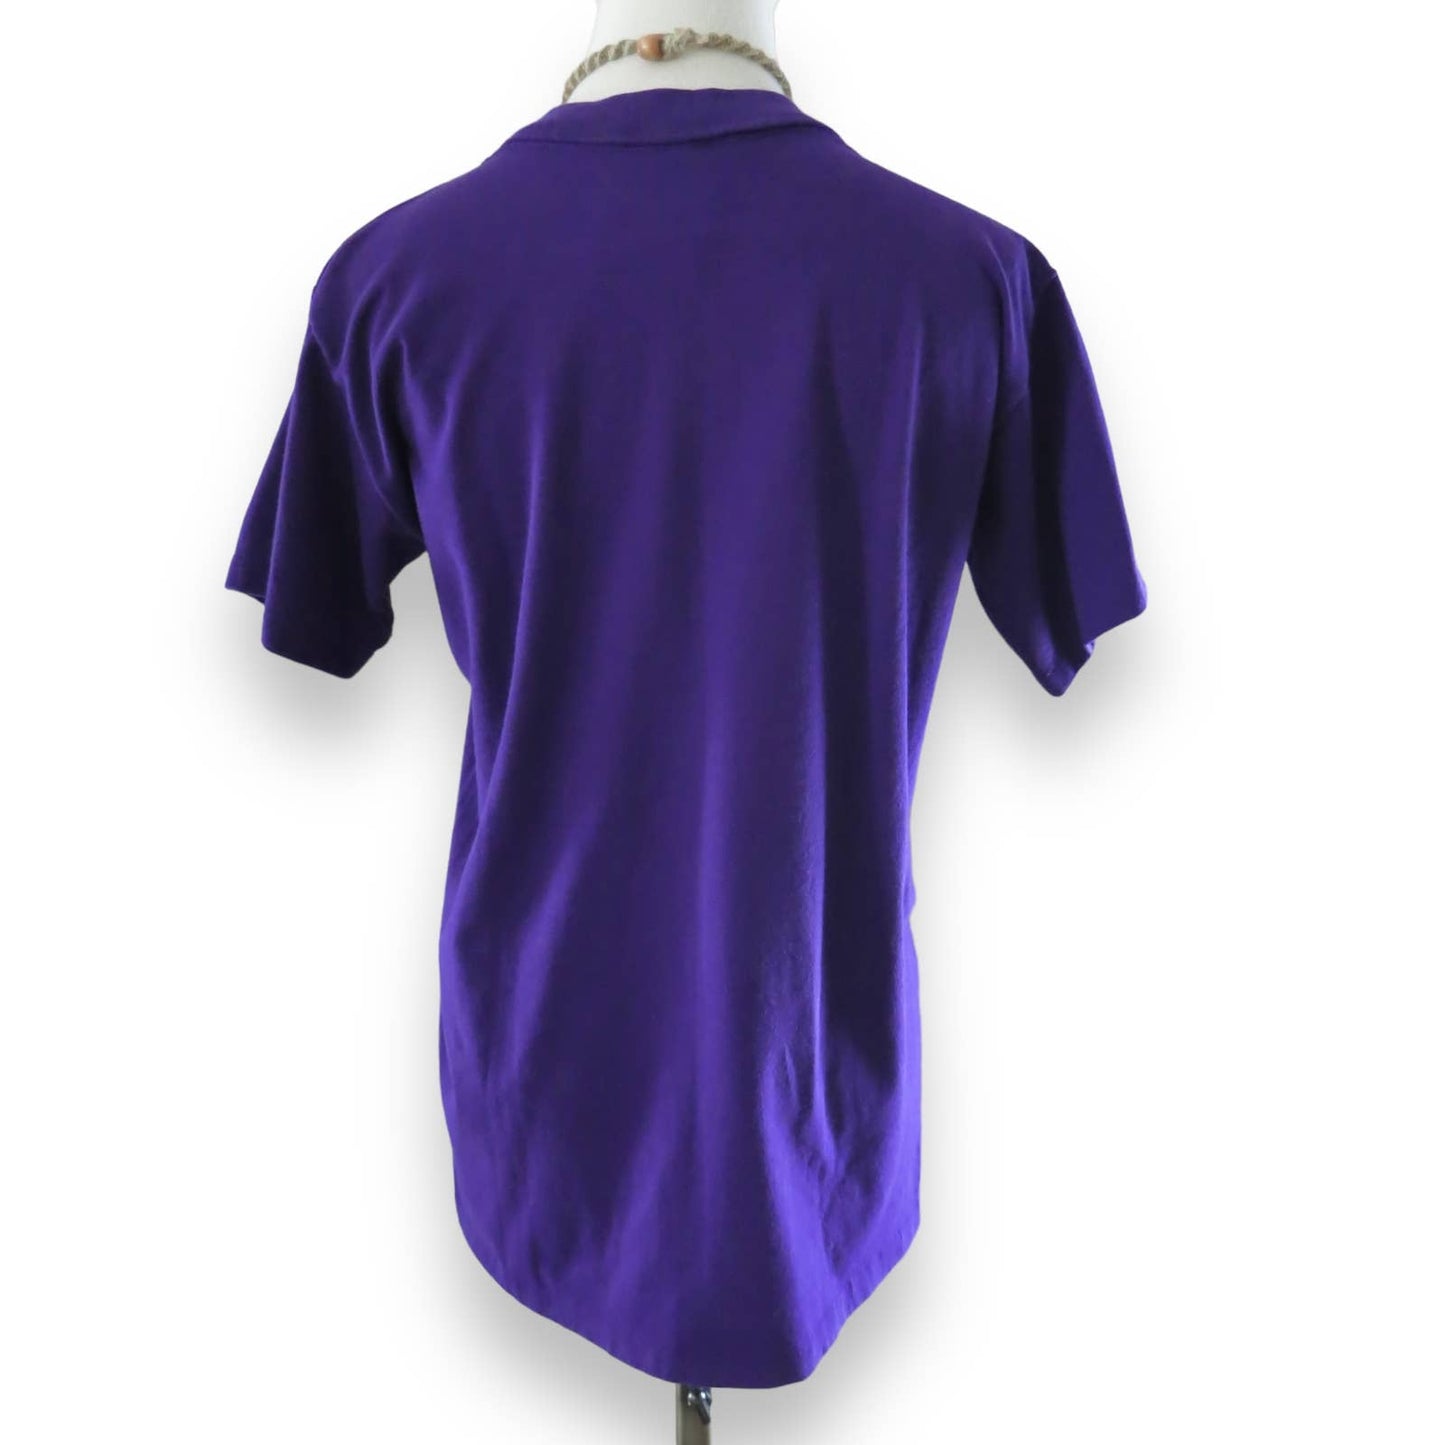 80s Vintage Destin Florida Purple Graphic T Shirt S